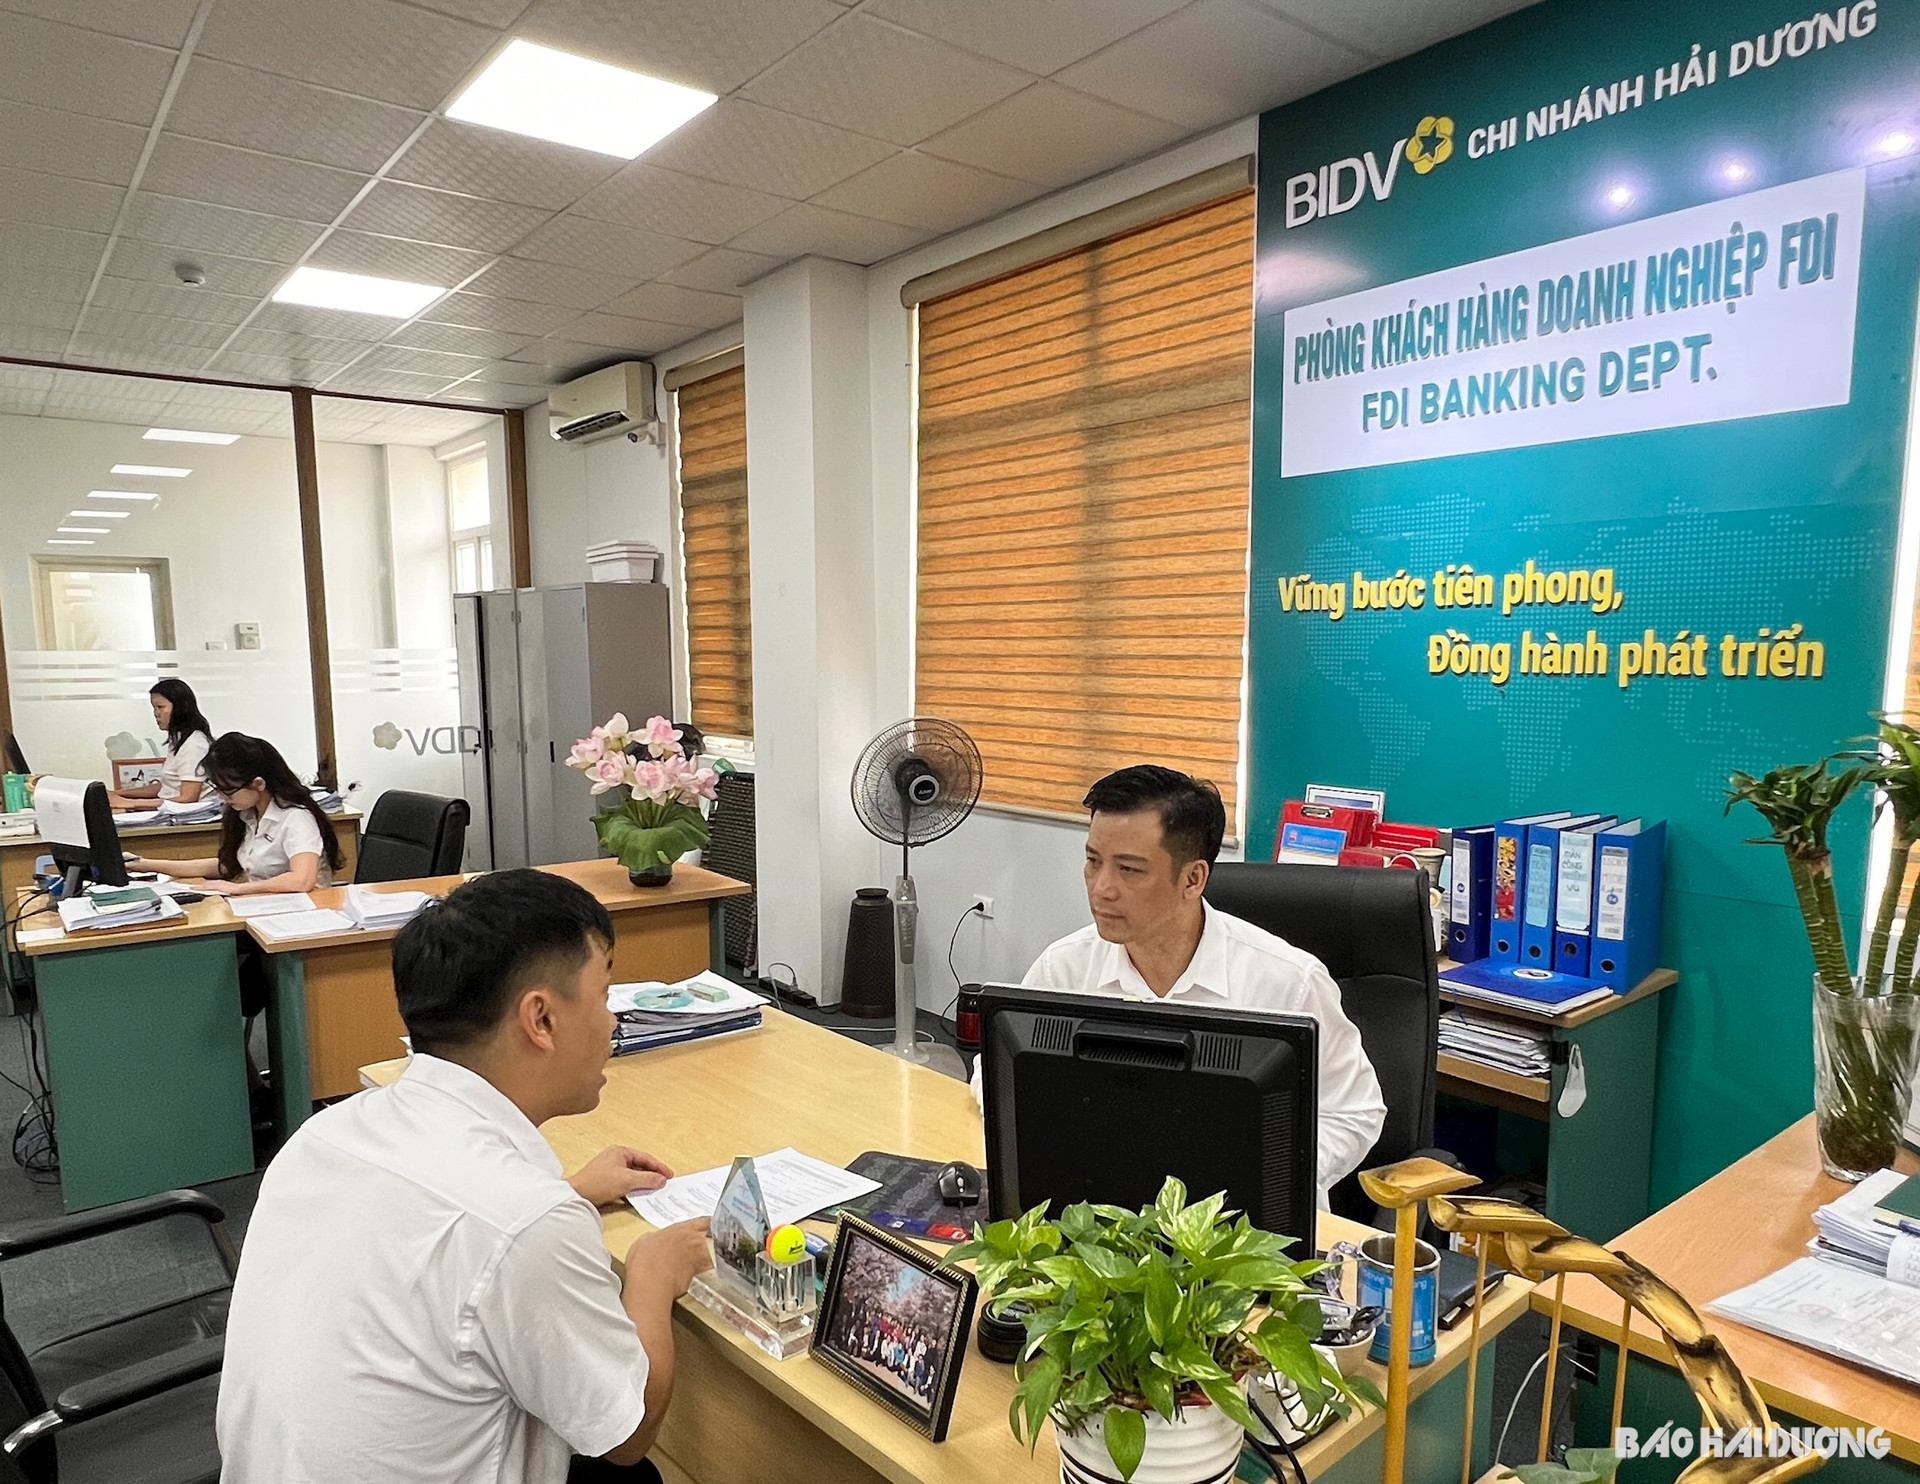 ảnh báo in: BIDV Hải Dương cung cấp dịch vụ toàn diện, hiện đại phục vụ khối khách hàng FDI để góp sức cùng tỉnh thu hút đầu tư